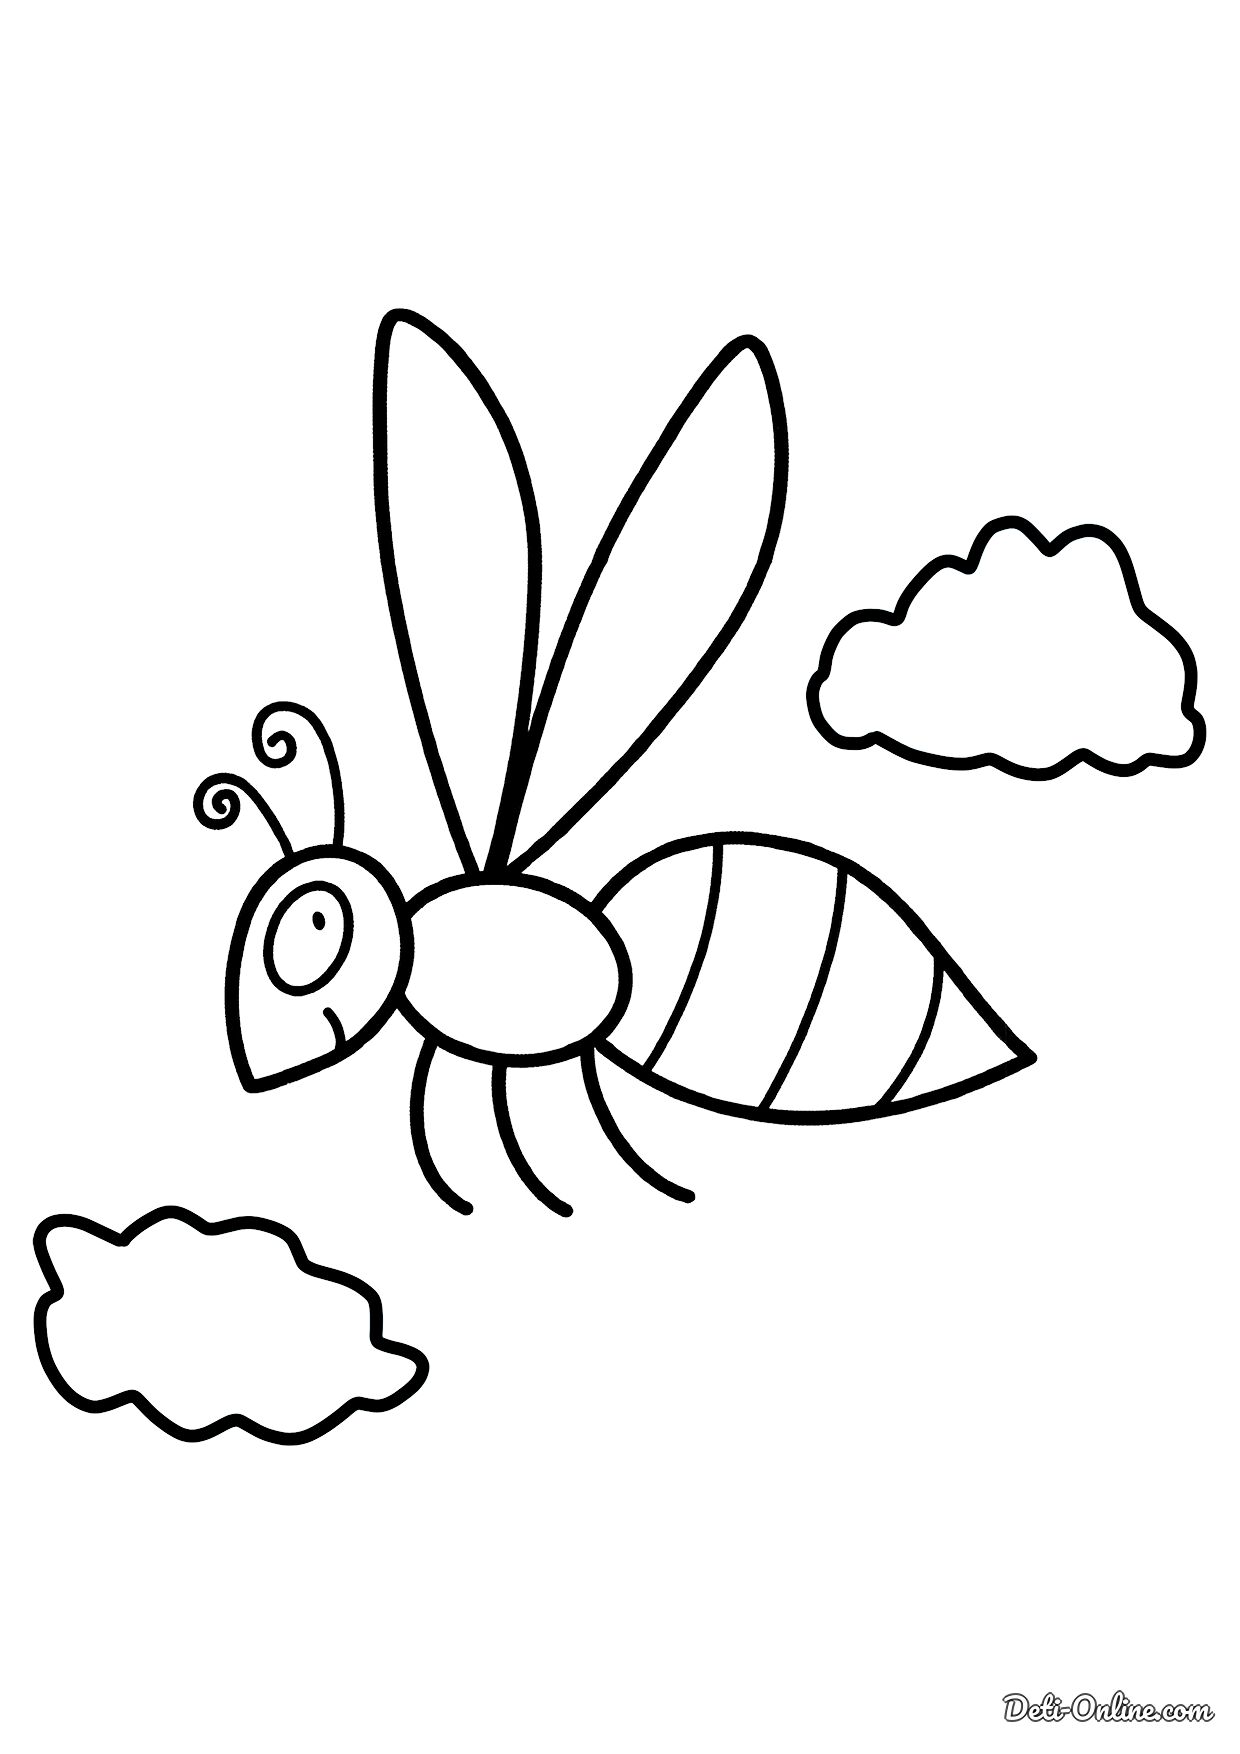 Раскраска насекомые для детей 3 4 лет. Раскраски насекомые для детей 4-5 лет. Раскраски насекомые для детей 3-4 лет. Раскраска. Букашки. Стрекоза раскраска для детей 3-4 лет.